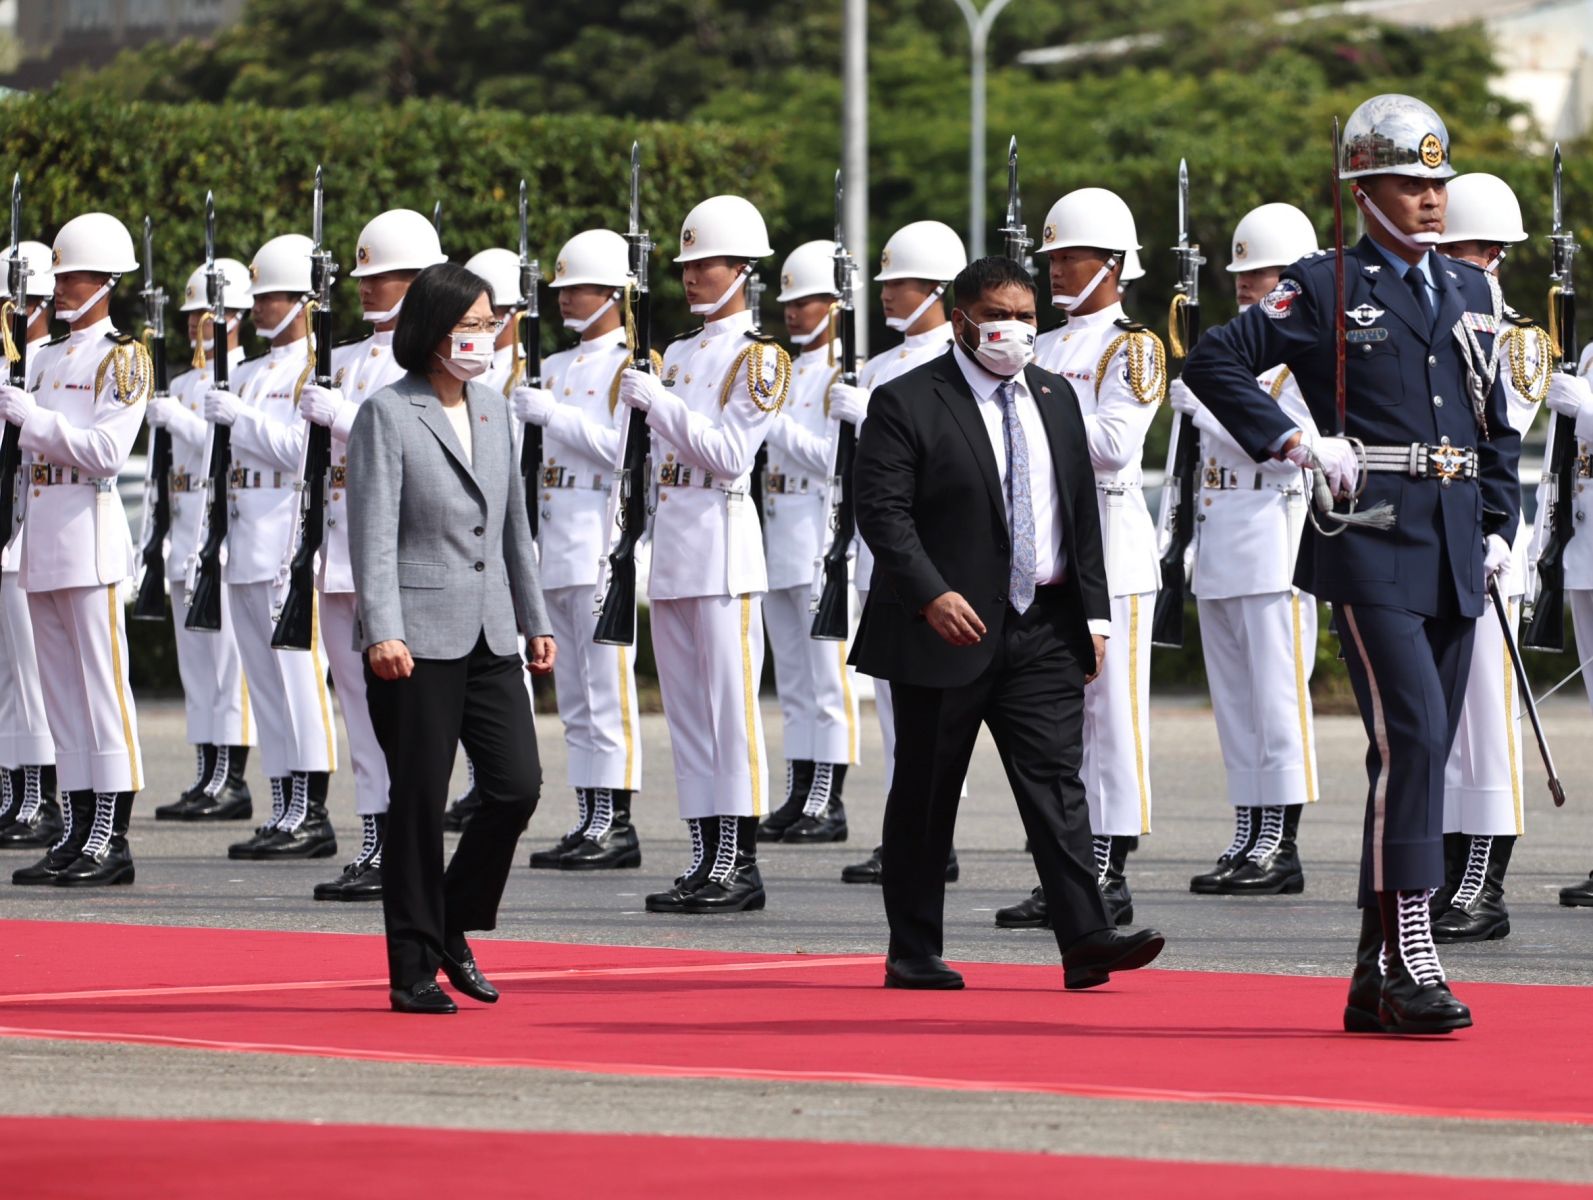  諾魯共和國總統昆洛斯昨率團抵達台灣開啟國是訪問，今接受總統蔡英文隆重軍禮歡迎。林啟弘攝